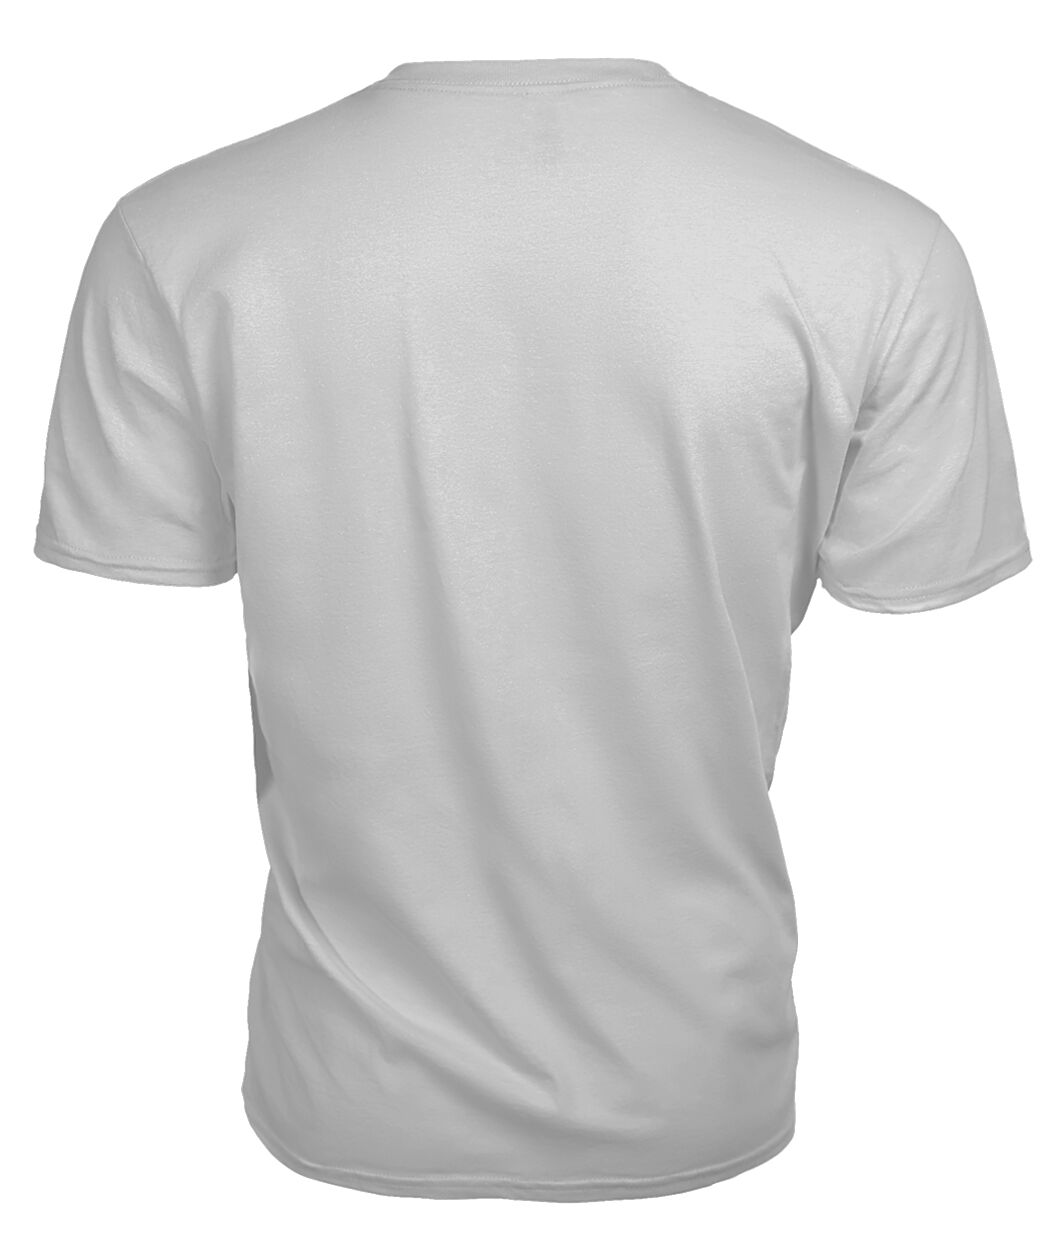 Durie Family Tartan - 2D T-shirt